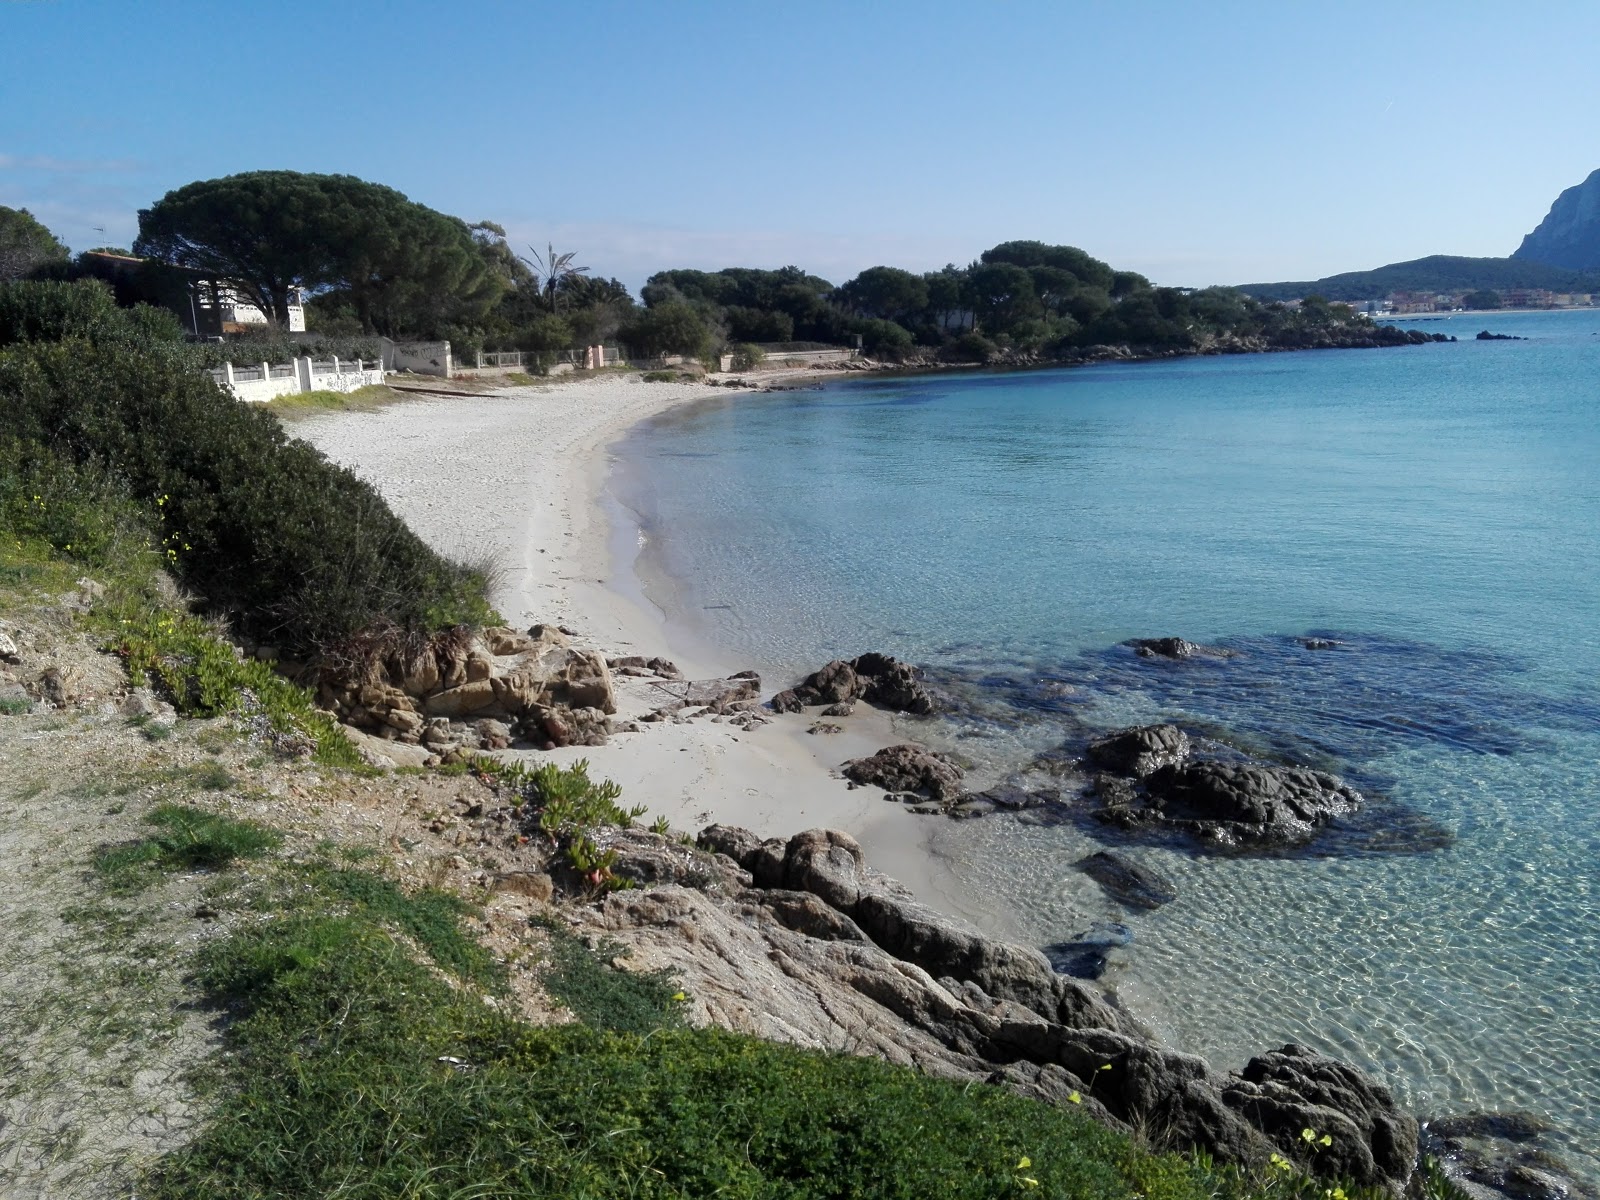 Zdjęcie Quinta Spiaggia - popularne miejsce wśród znawców relaksu